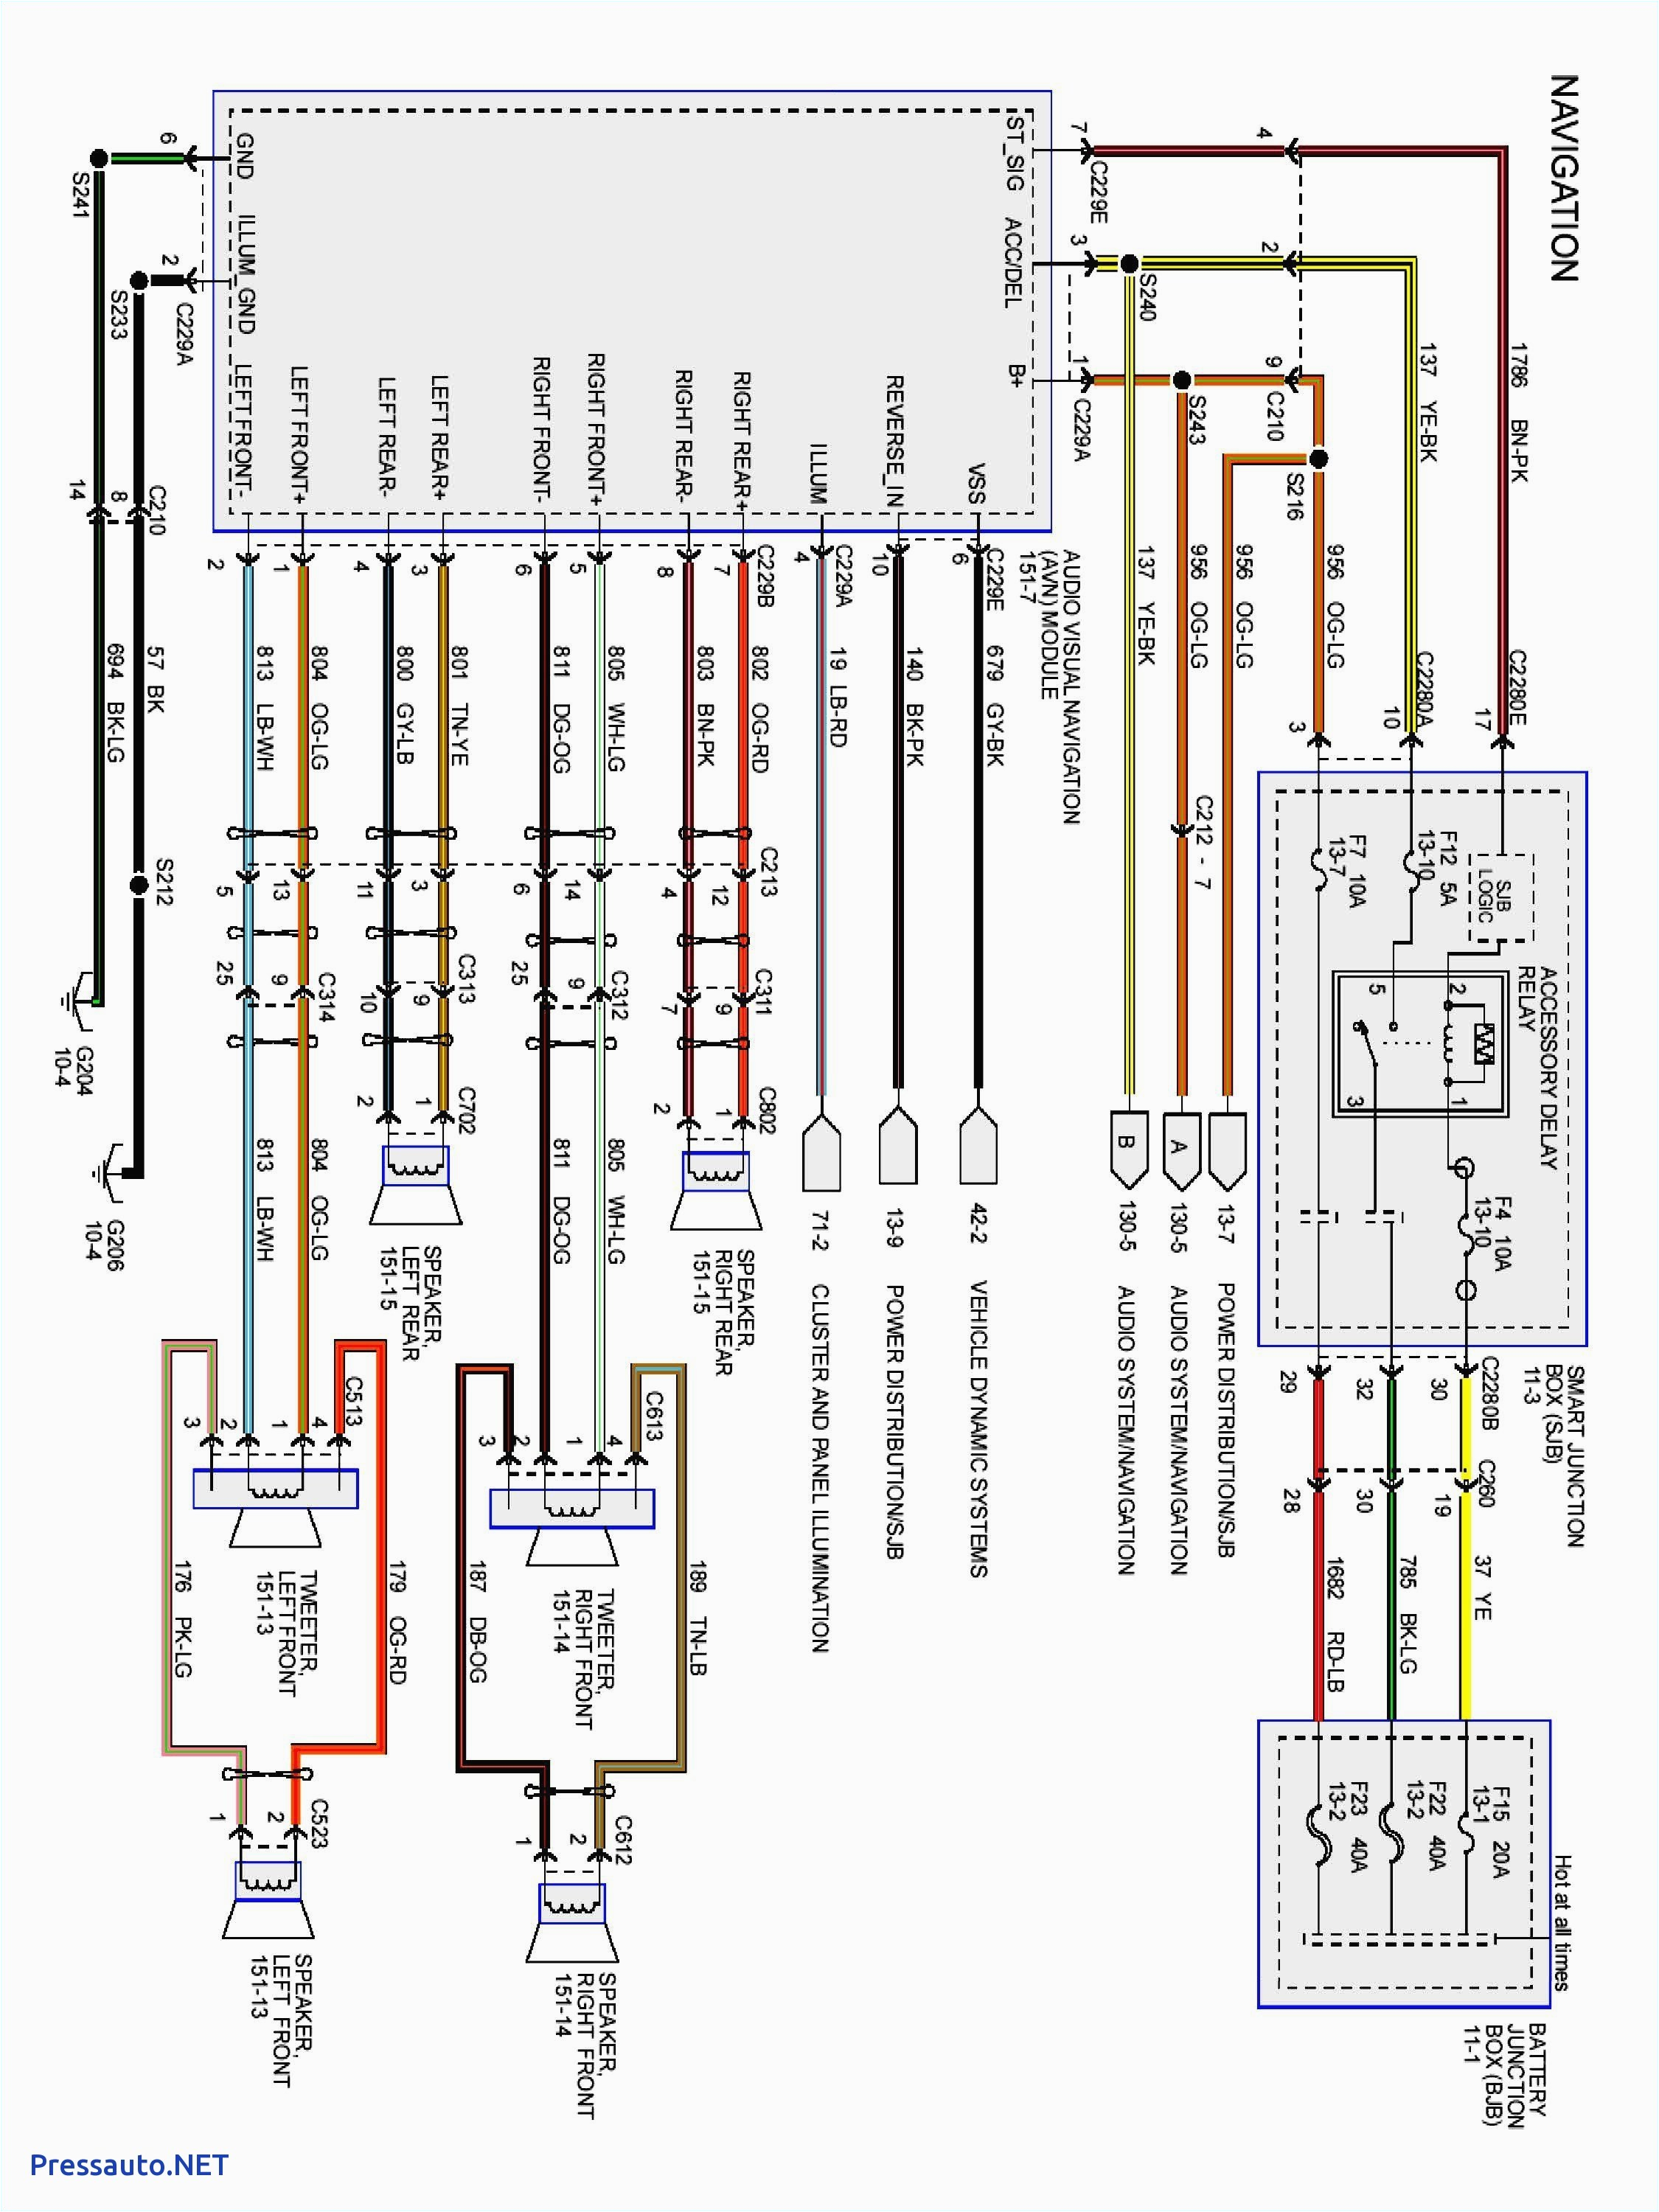 2007 ford f150 radio wiring diagram wiring diagram 2007 ford f 150 wiring diagram generator